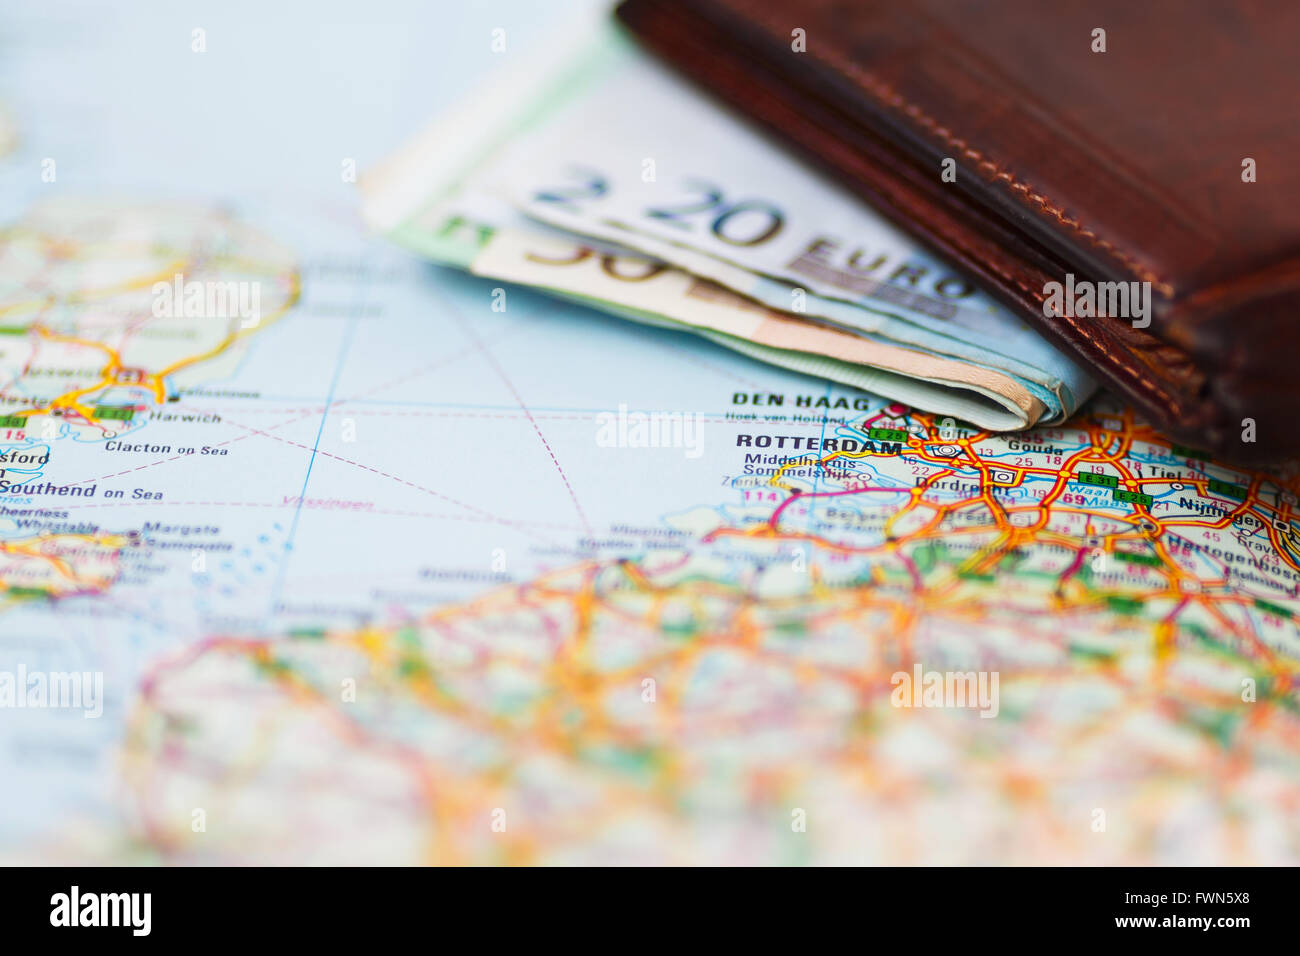 Euro-Banknoten im Portemonnaie auf einer geografischen Karte von Rotterdam, Niederlande Stockfoto